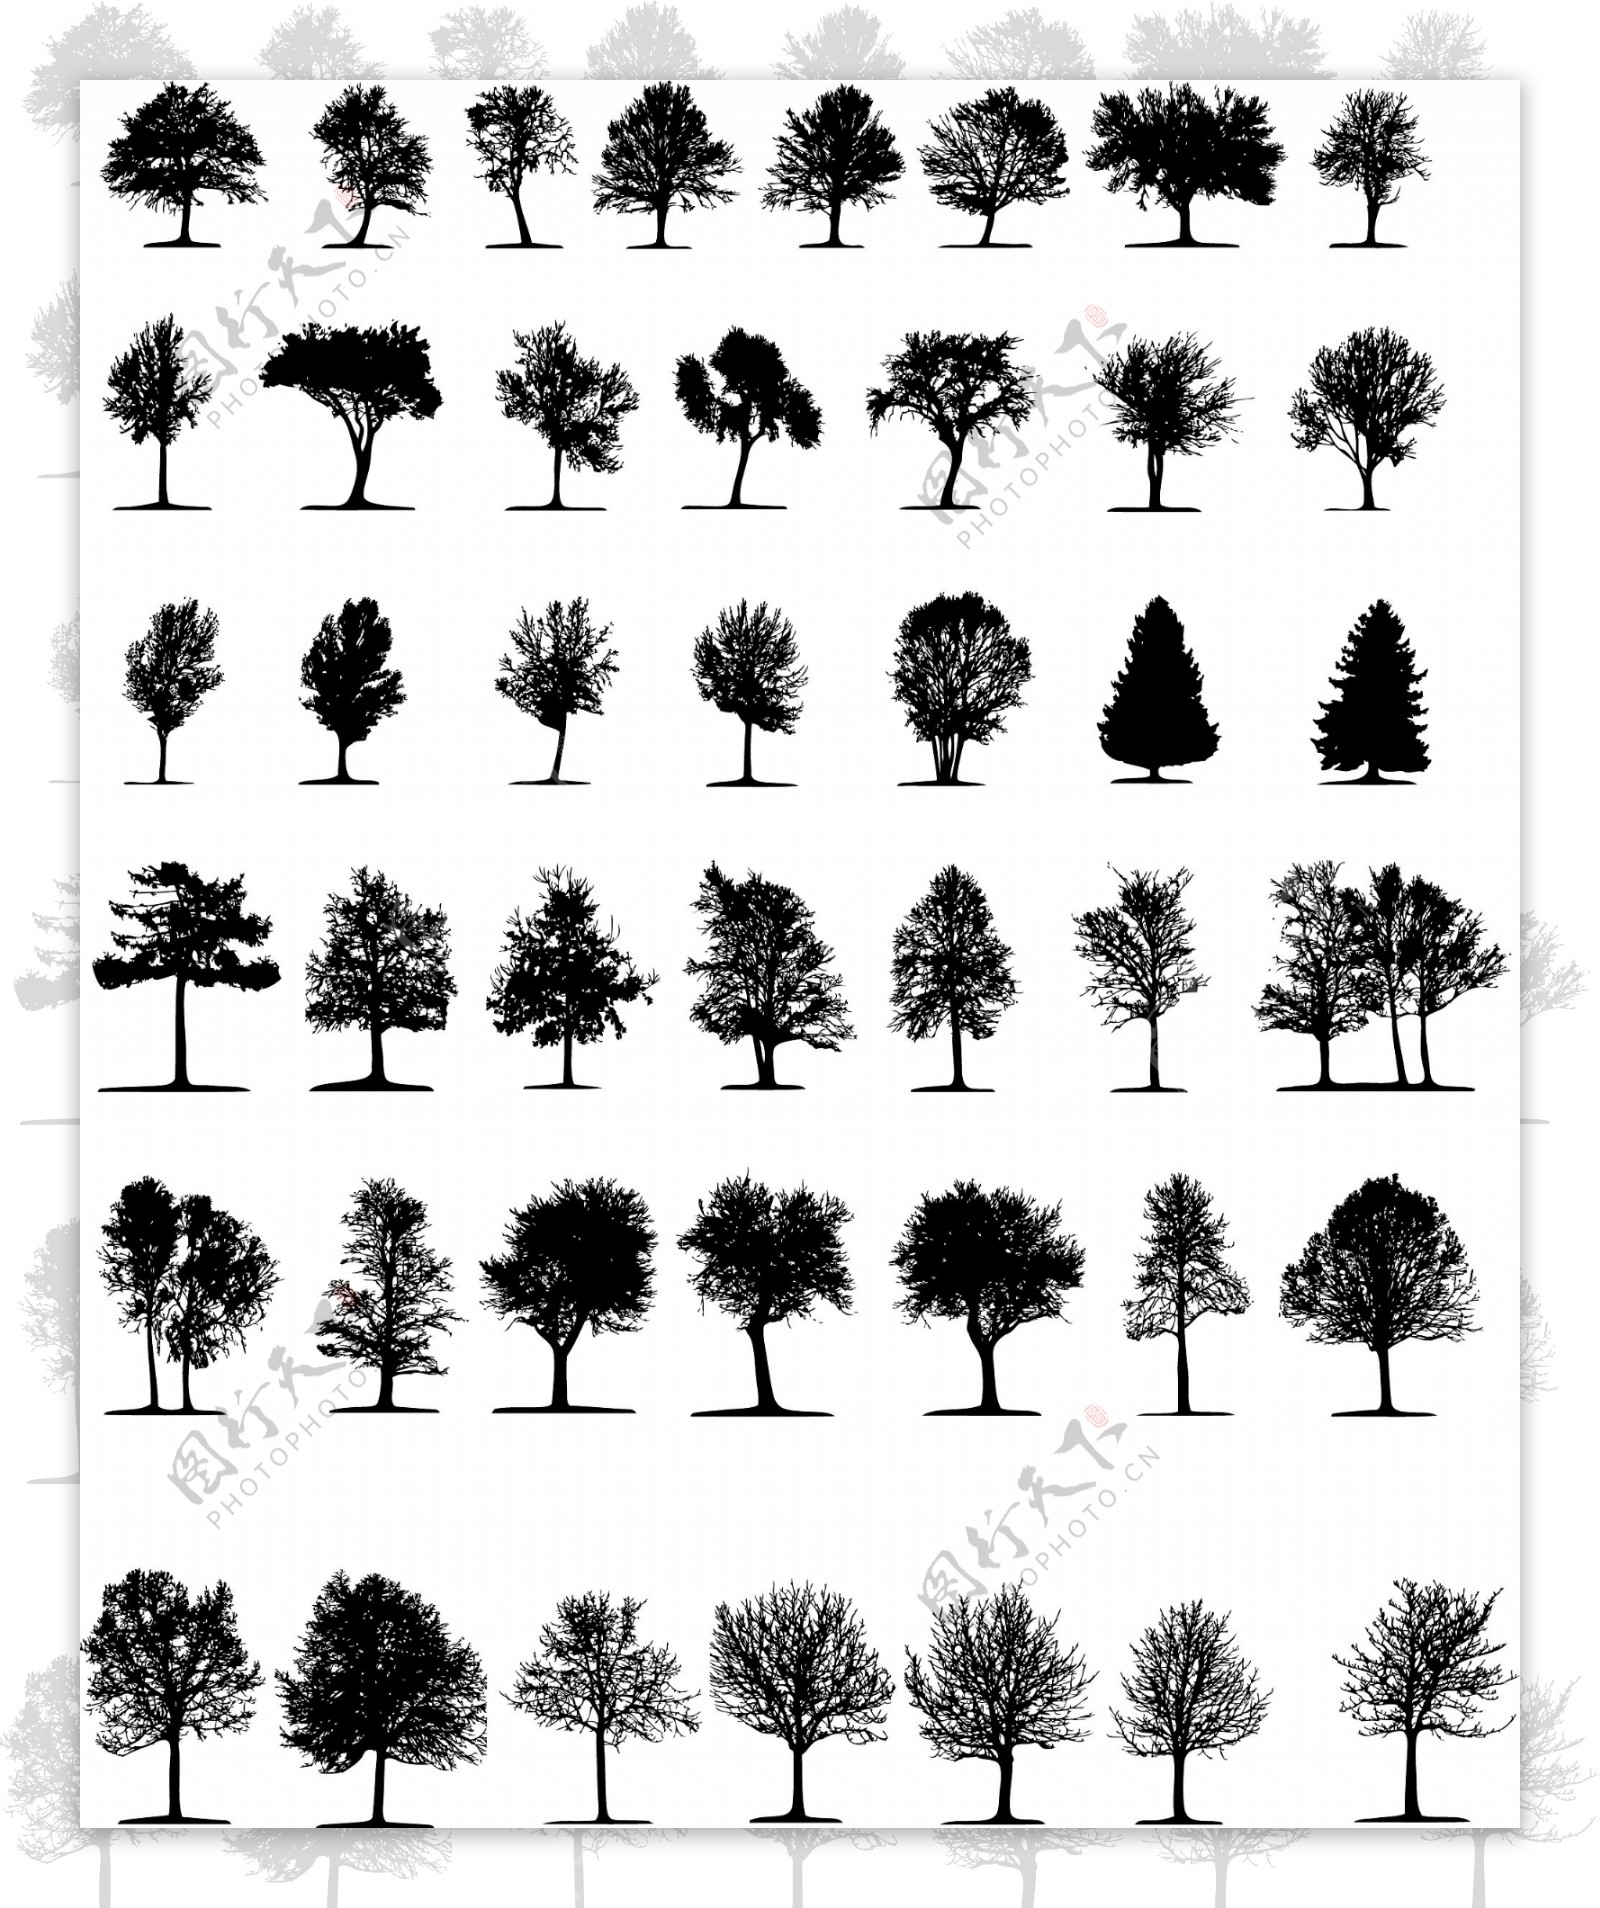 树剪影矢量图片